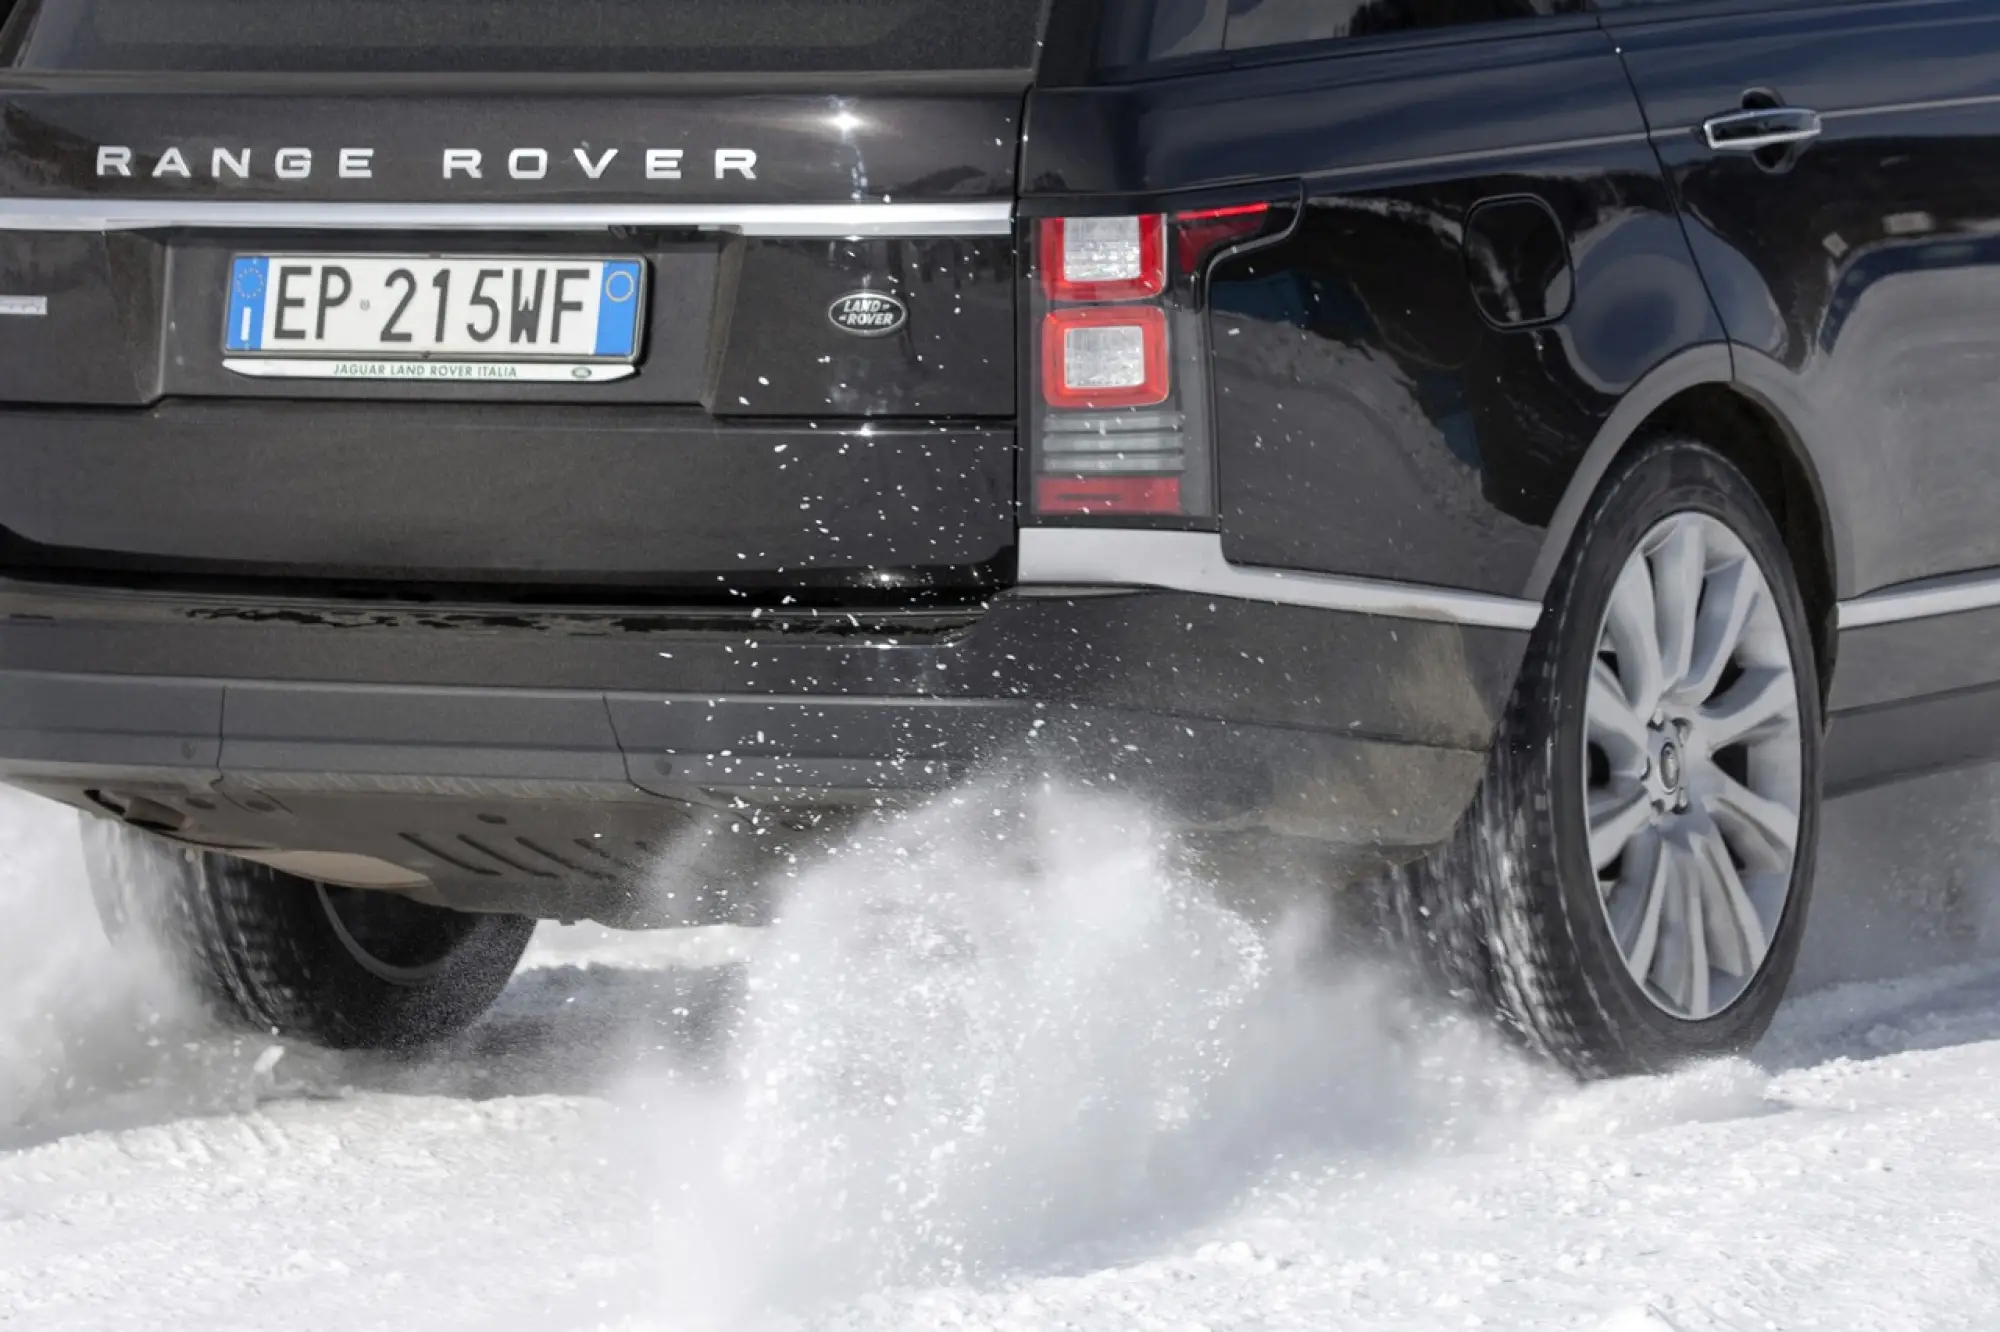 Nuova Range Rover - Presentazione stampa italiana - Bormio 2013 - 25